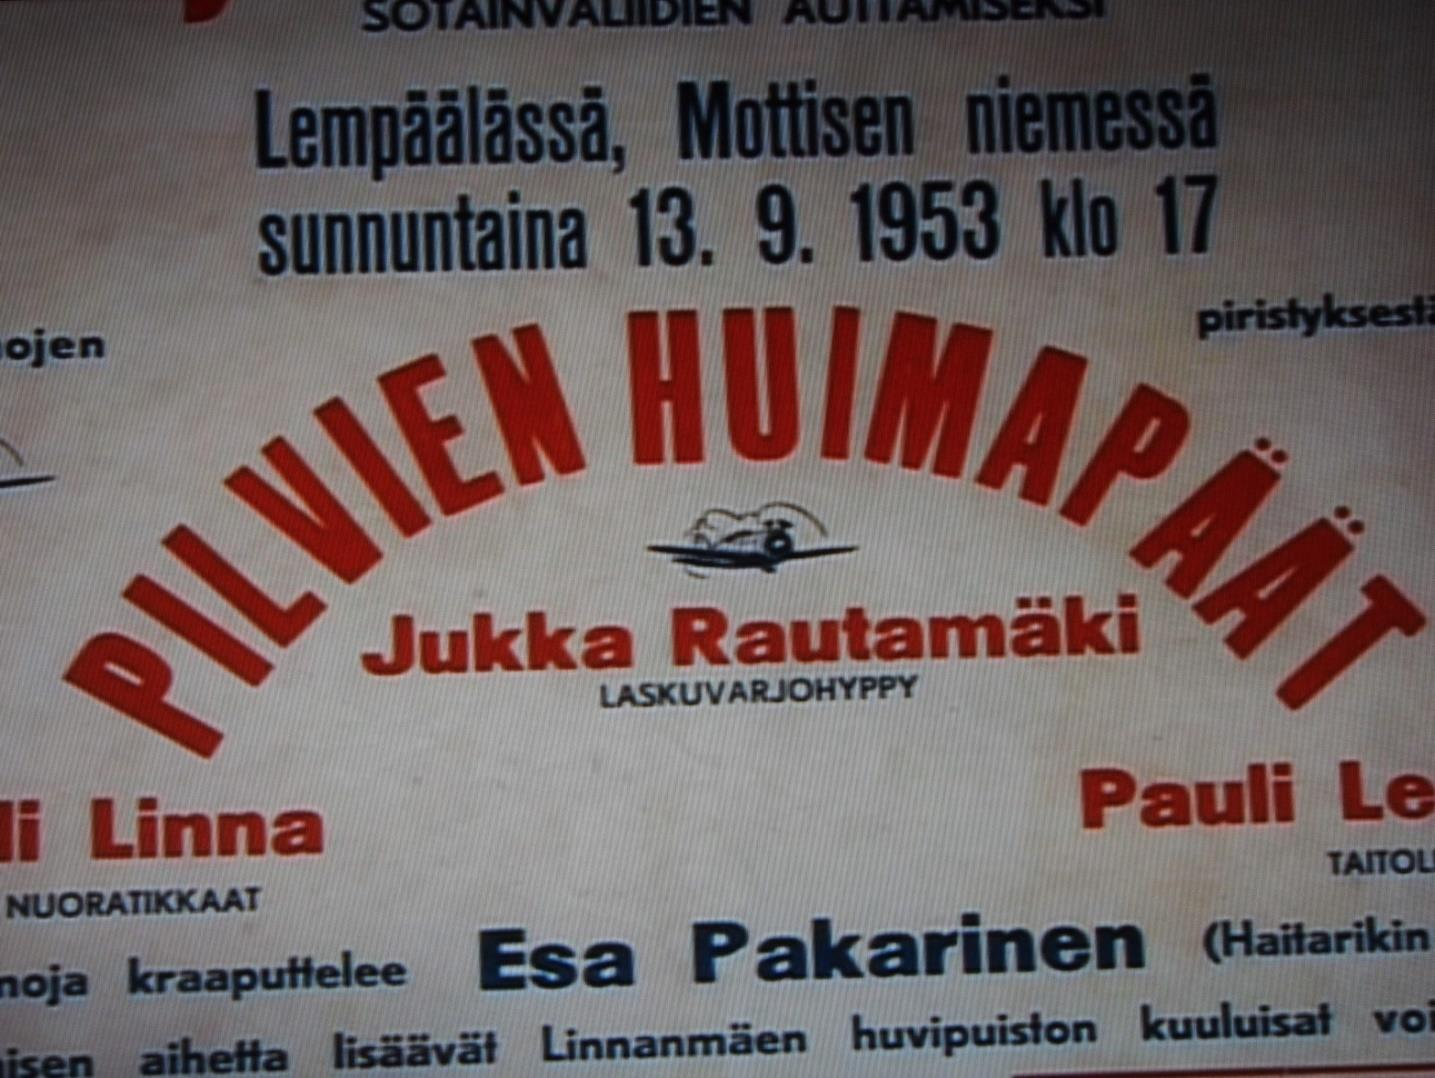 Rautamäki ja Linna olivat vuonna Lempäälässä sotainvalidien auttamiseksi järjestetyn lentonäytöksen vetonauloja.